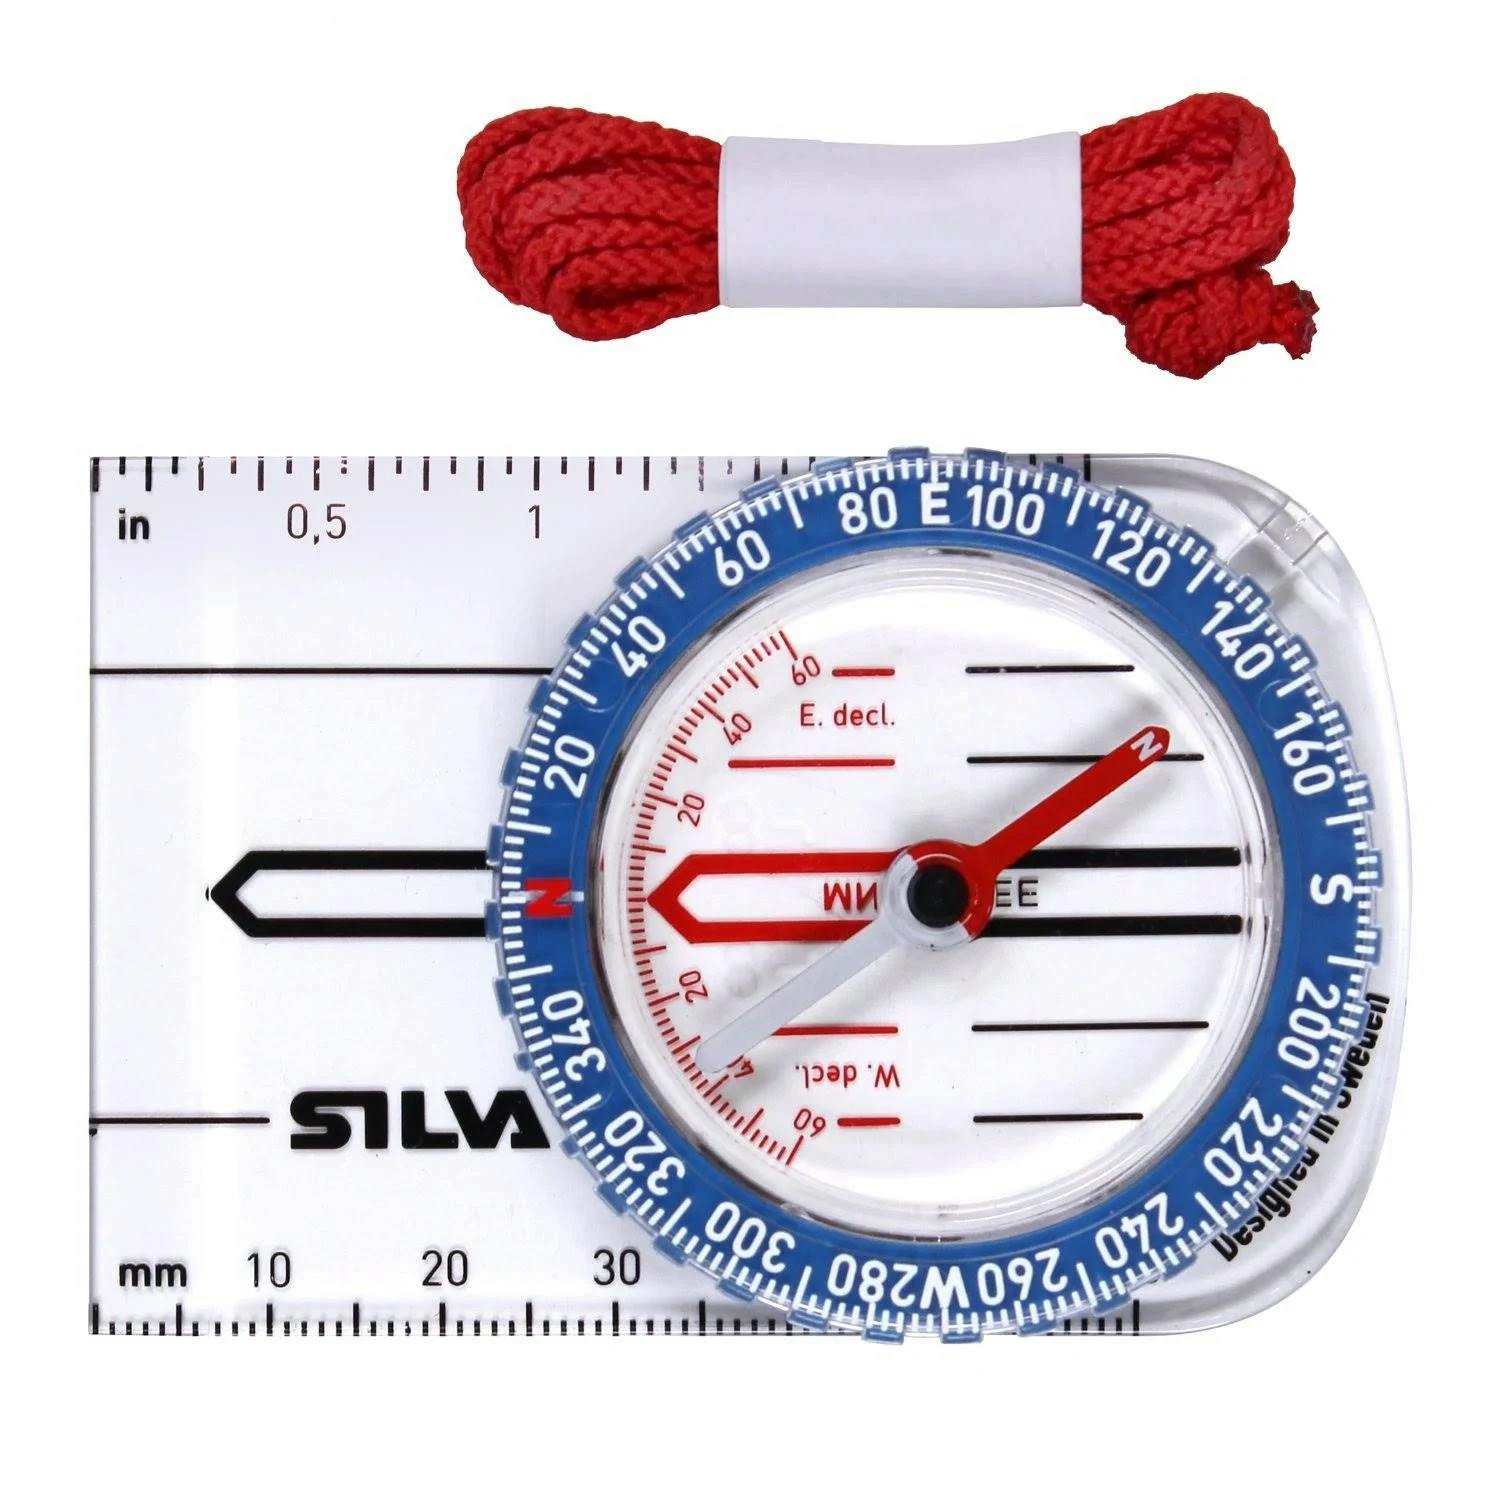 Silva - Starter #1-2-3 Compass